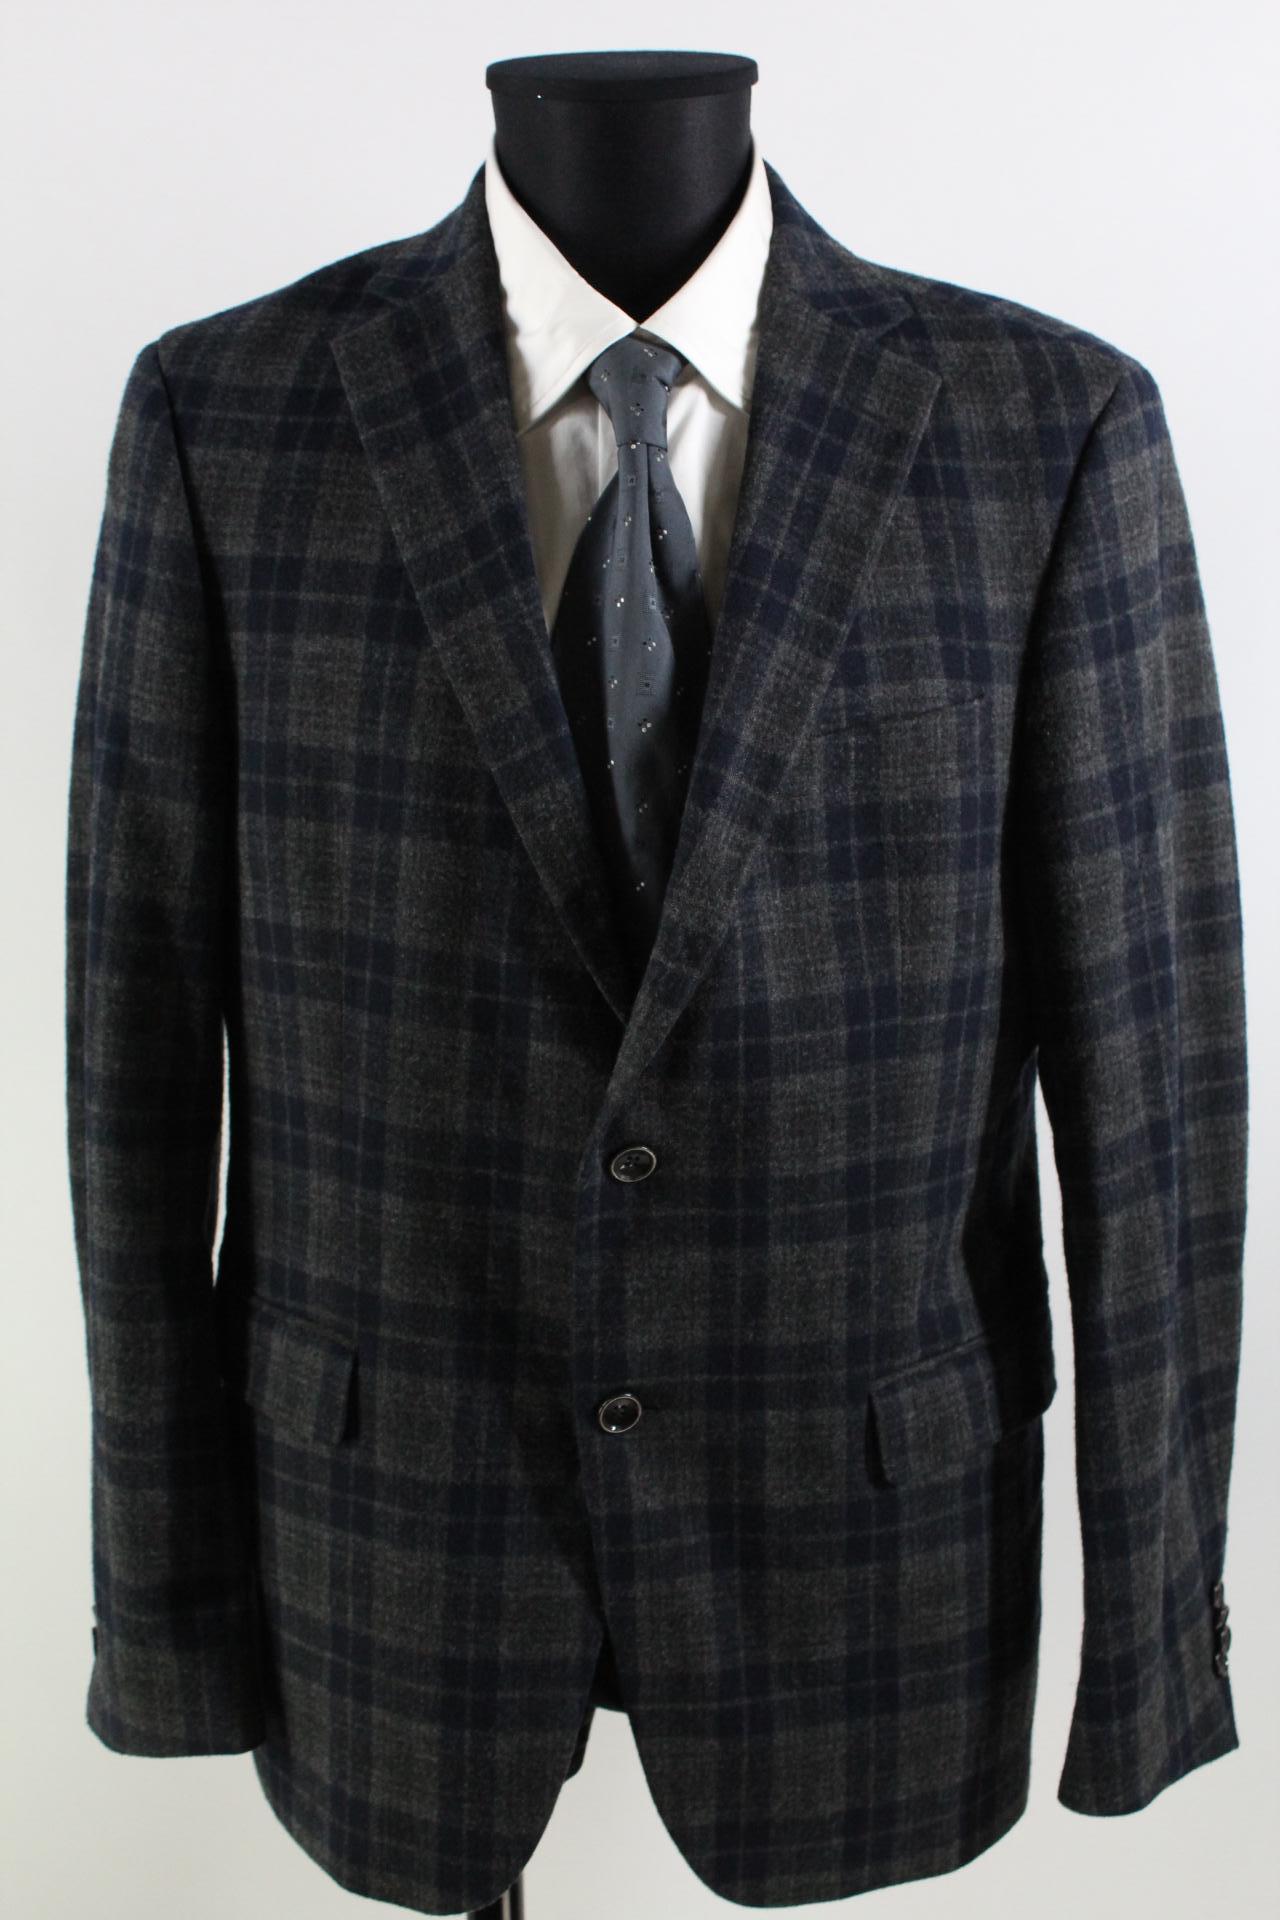 Tommy Hilfiger Tailored Tweed-Sakko grau/blau Größe 50